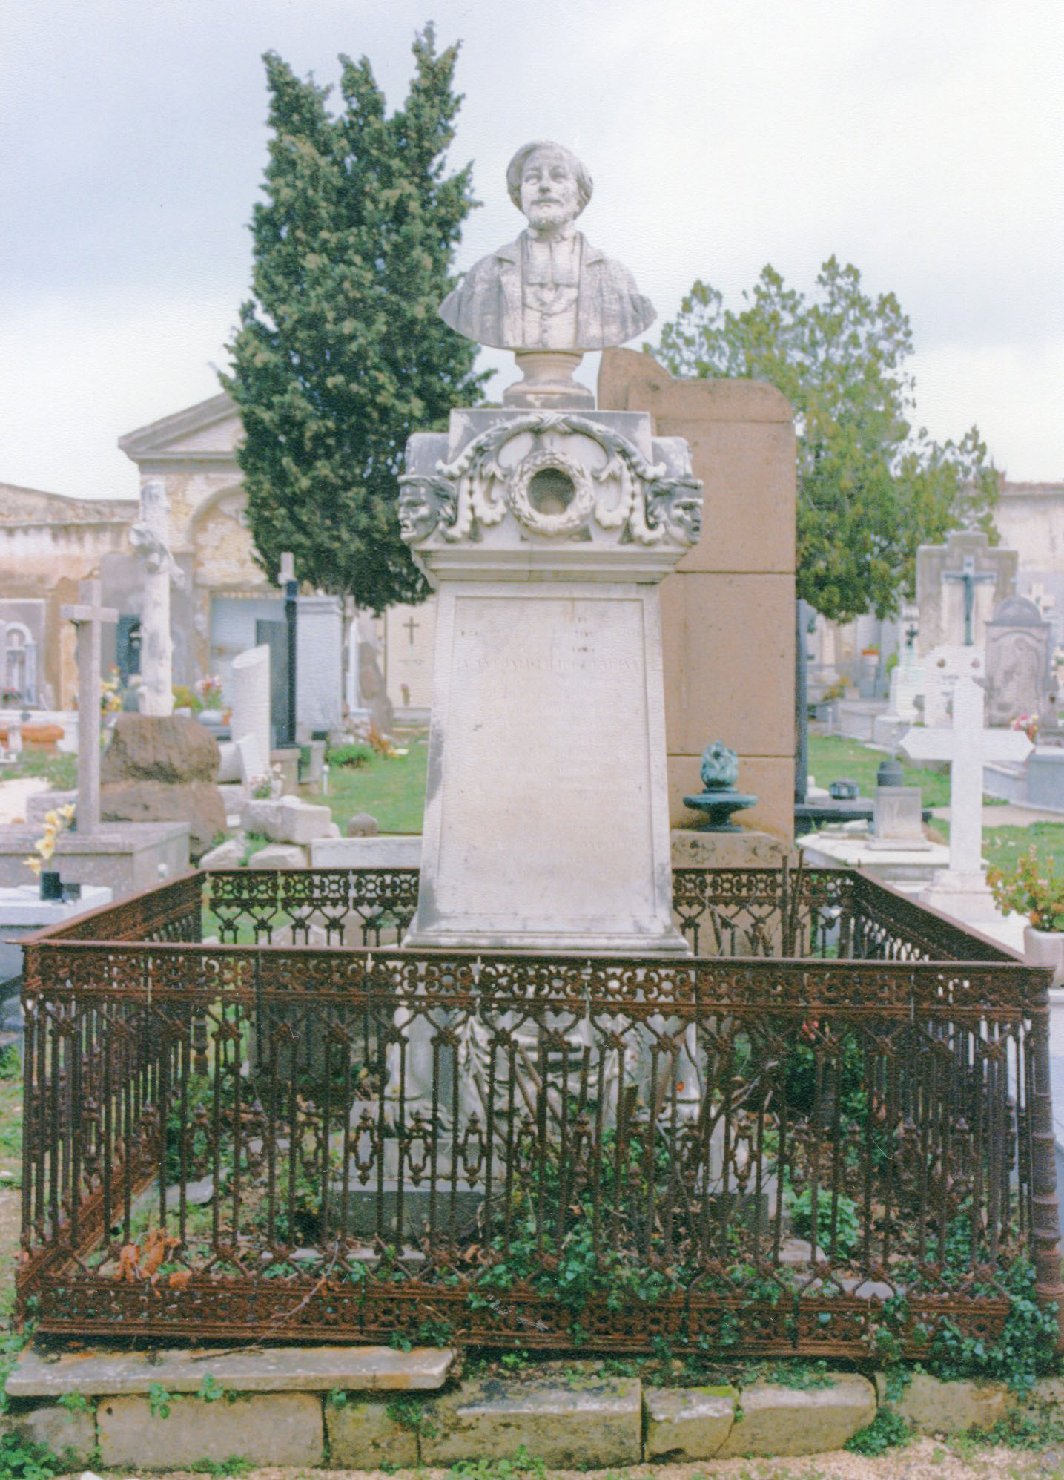 Ritratto di giacomo chessa, busto ritratto d'uomo (monumento funebre)